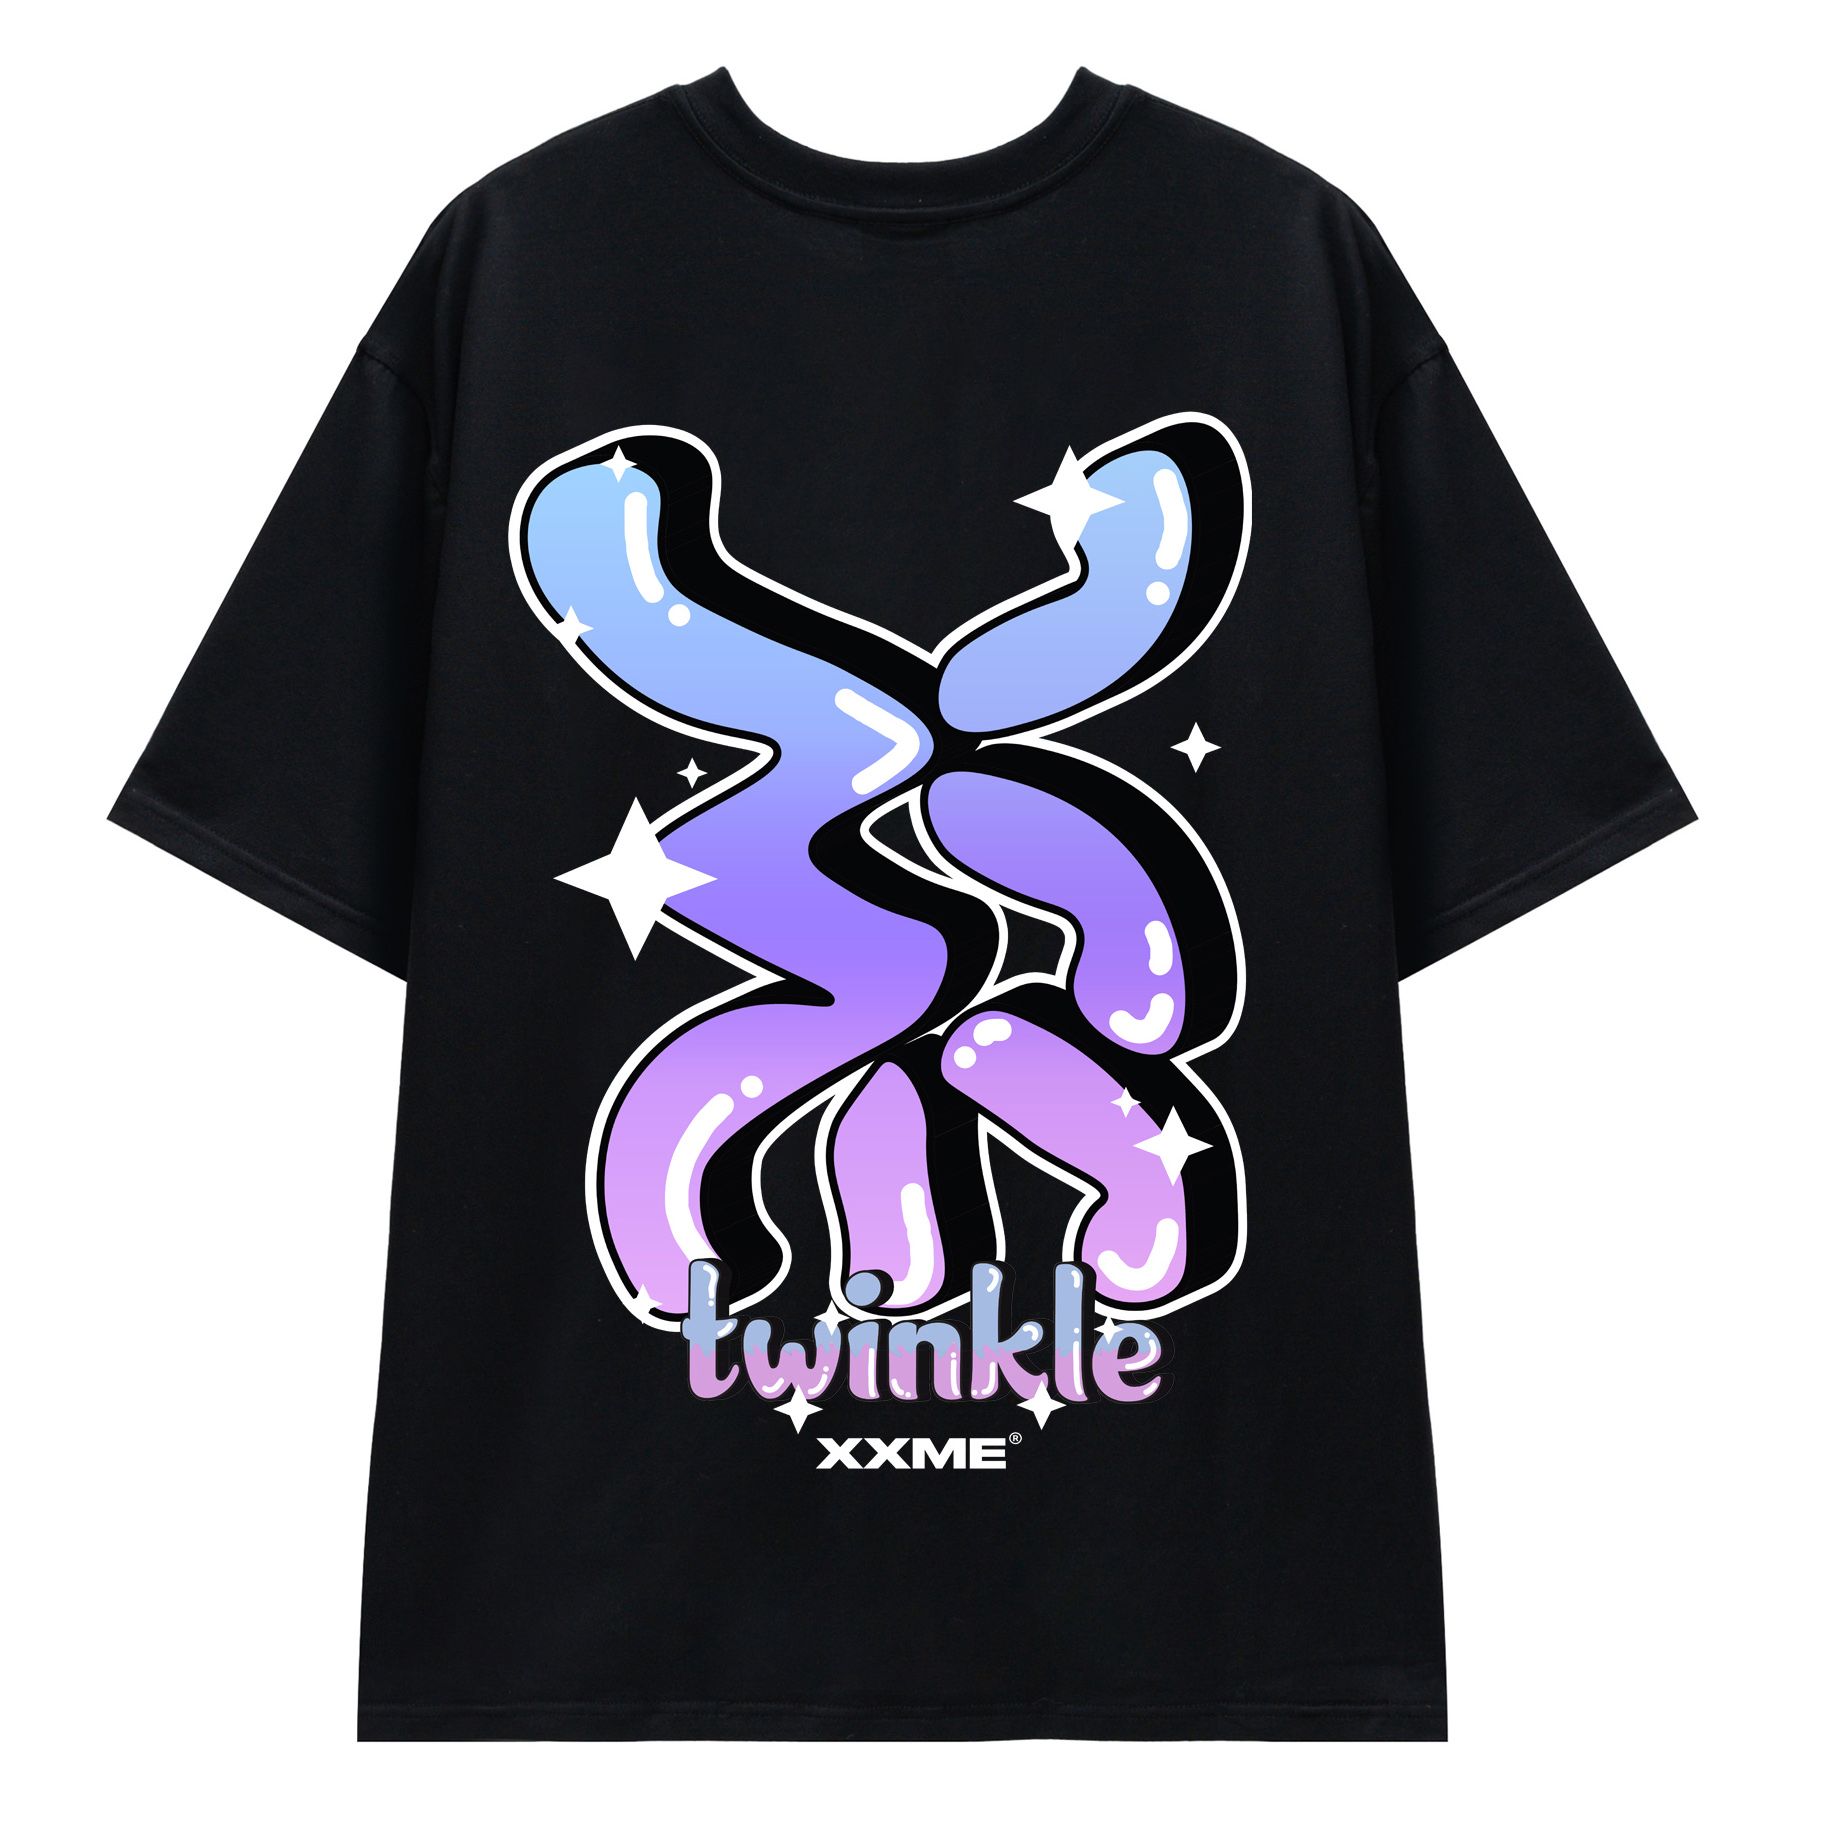  Áo Thun Big Logo Twinkle Tshirt - Black 